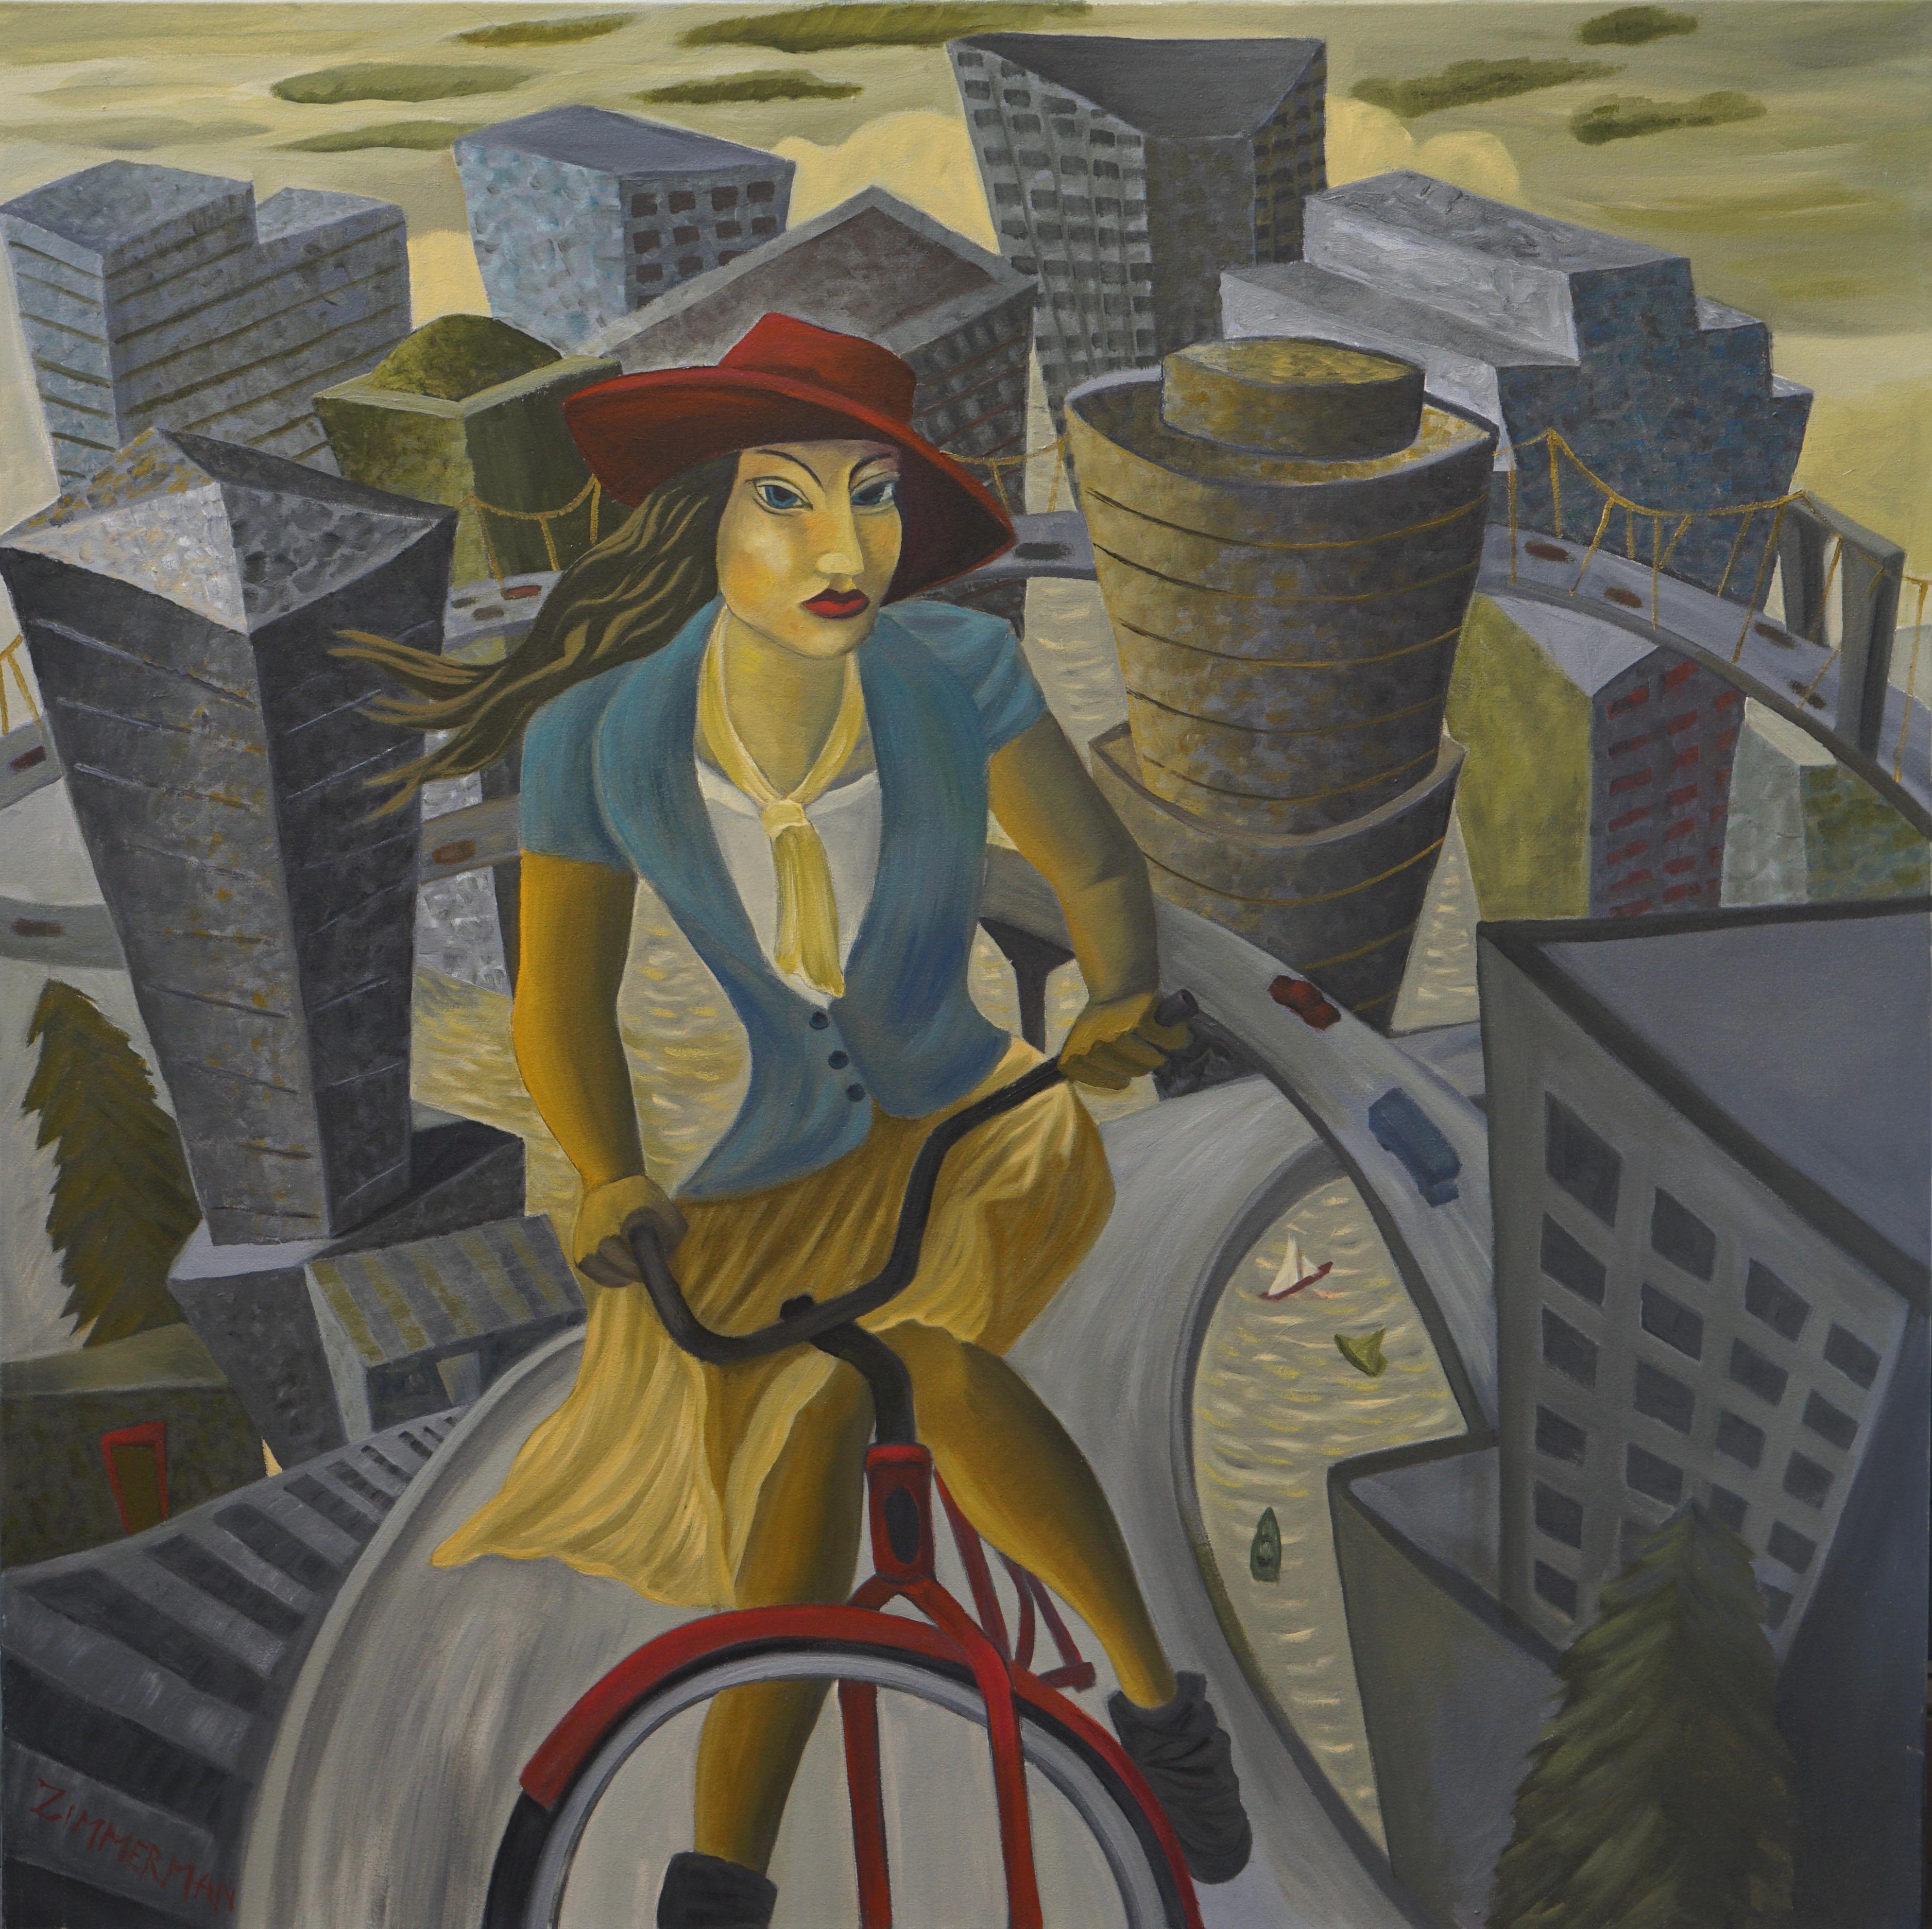 Ein kubistisches, verspieltes Stadtbild von Portland mit seinen berühmten Brücken, die den Fluss überqueren, bildet die Kulisse für diese Bikerin in Vintage-Kleidung und mit rotem Hut. 

Portland's Finest: Viva la Fem –  Figuratives Gemälde von Marc